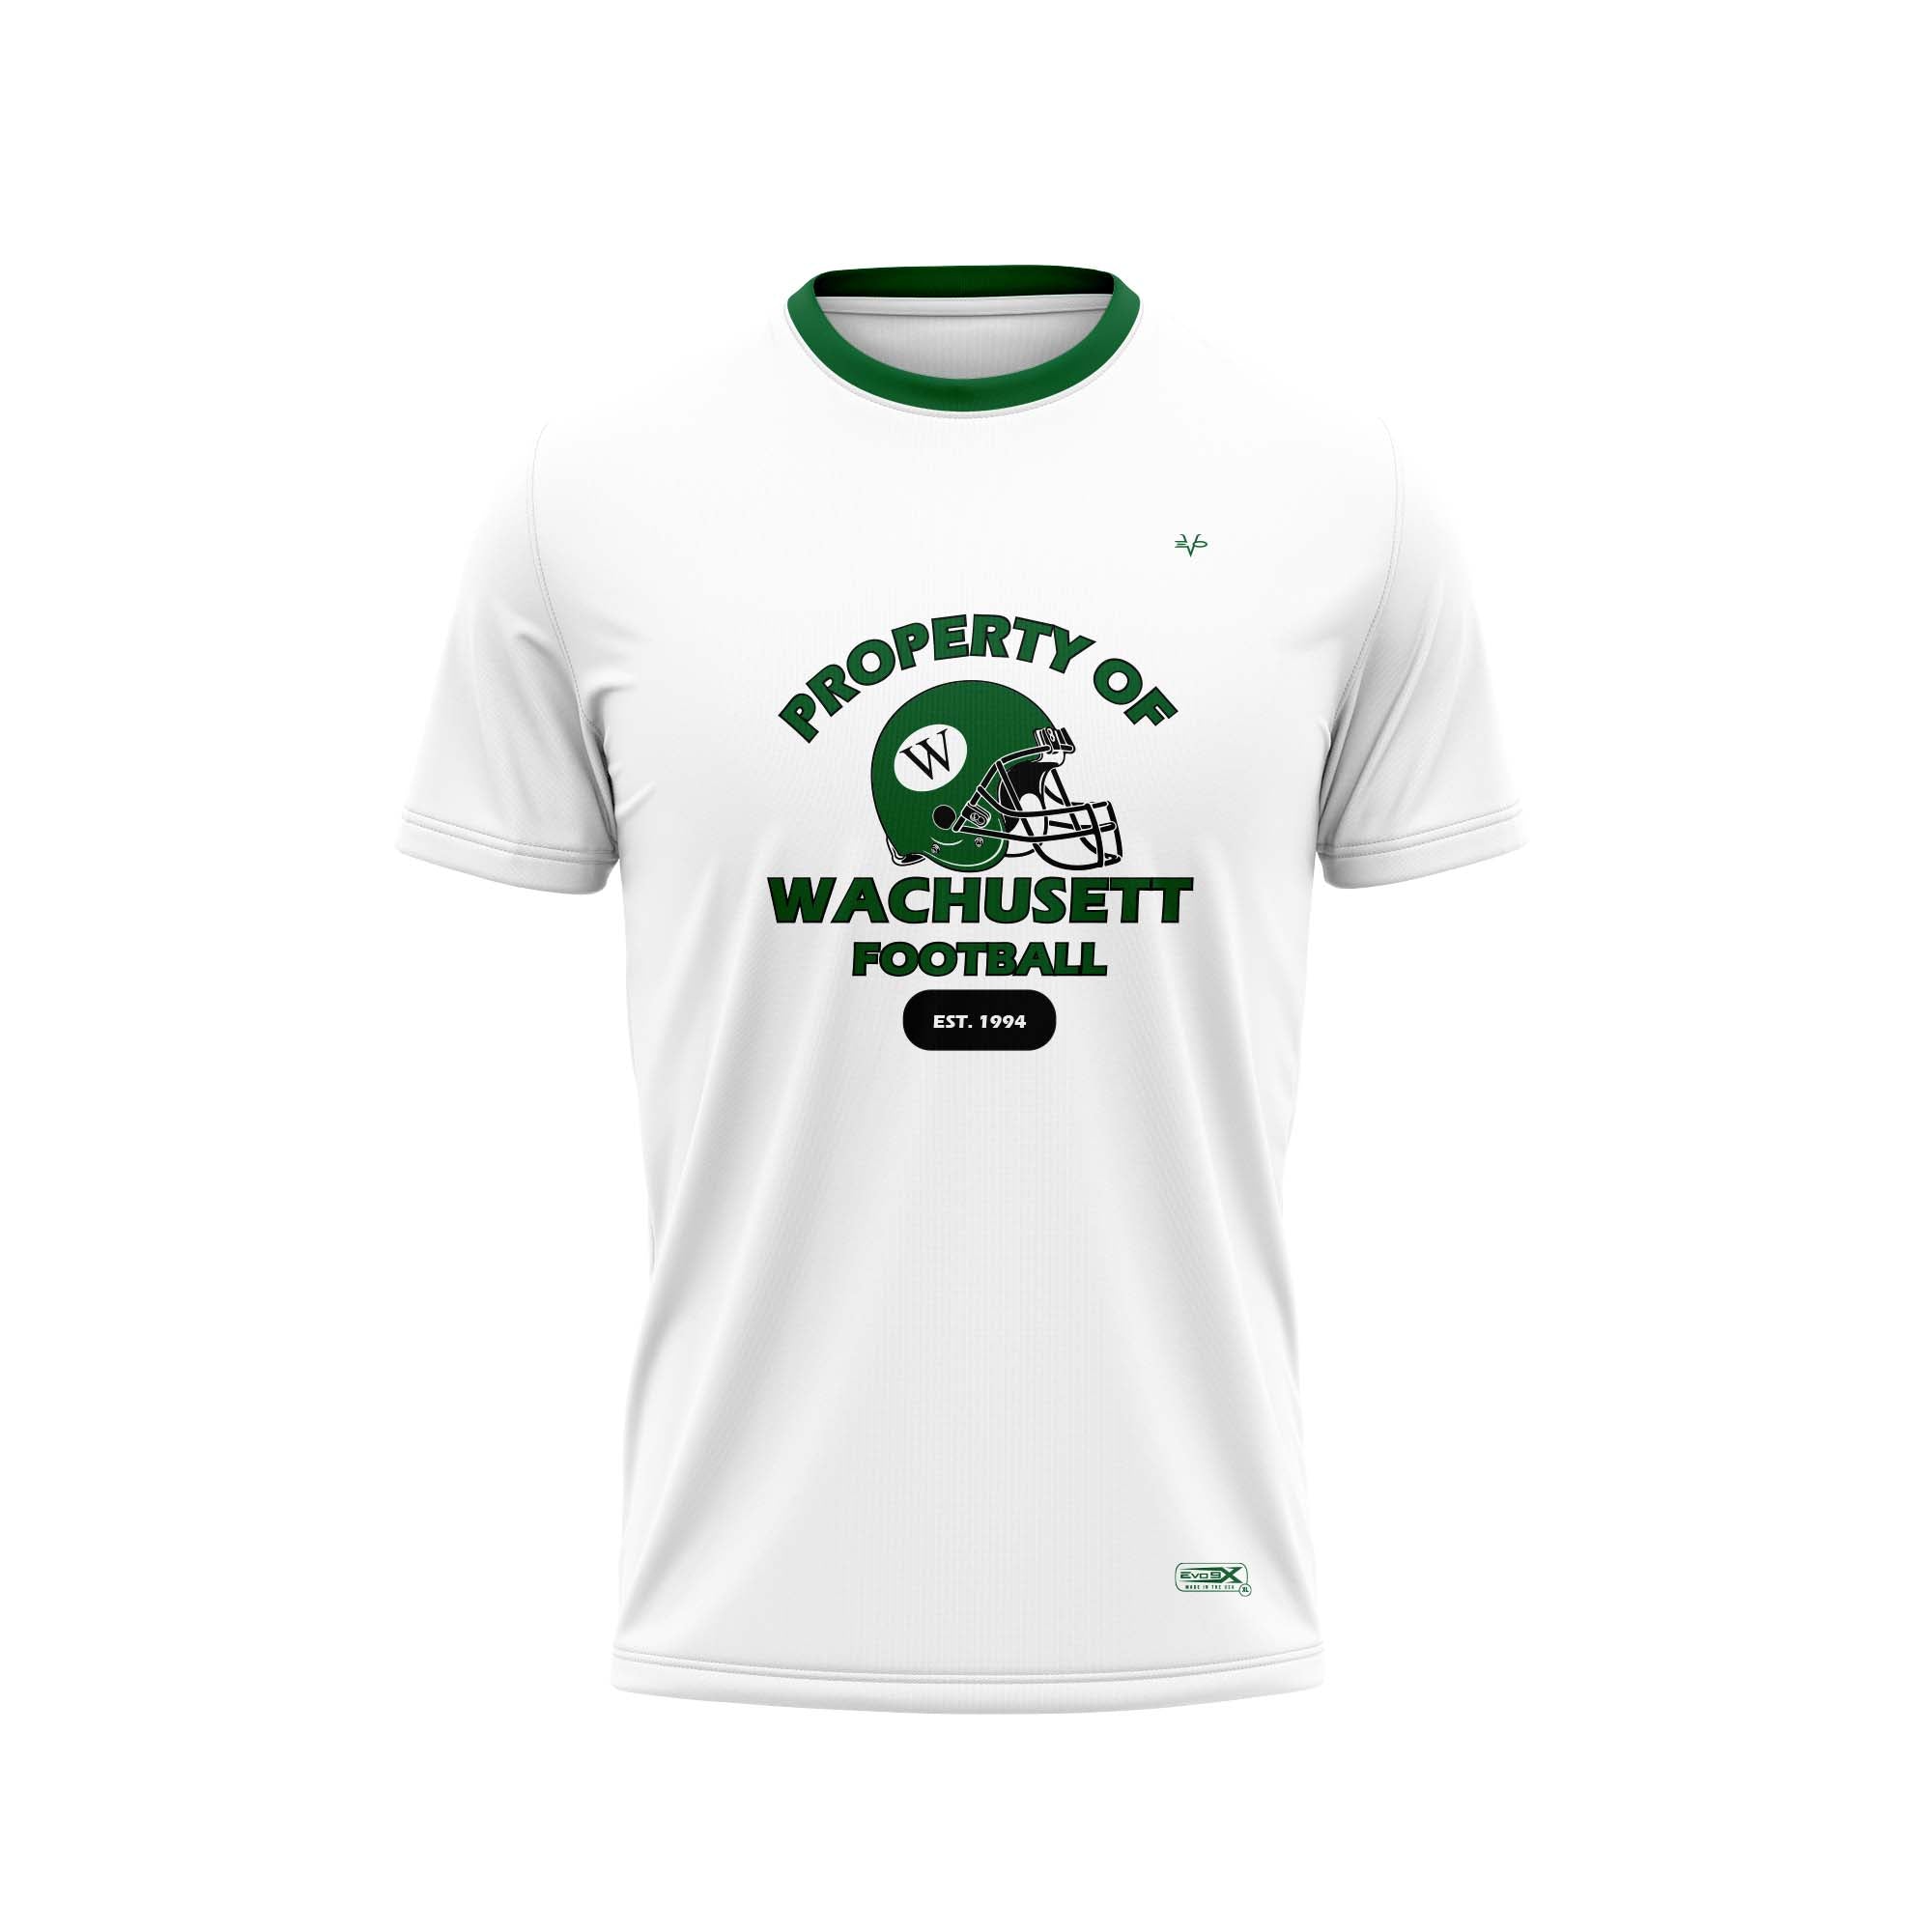 WACHUSETT FOOTBALL Crew Shirt White